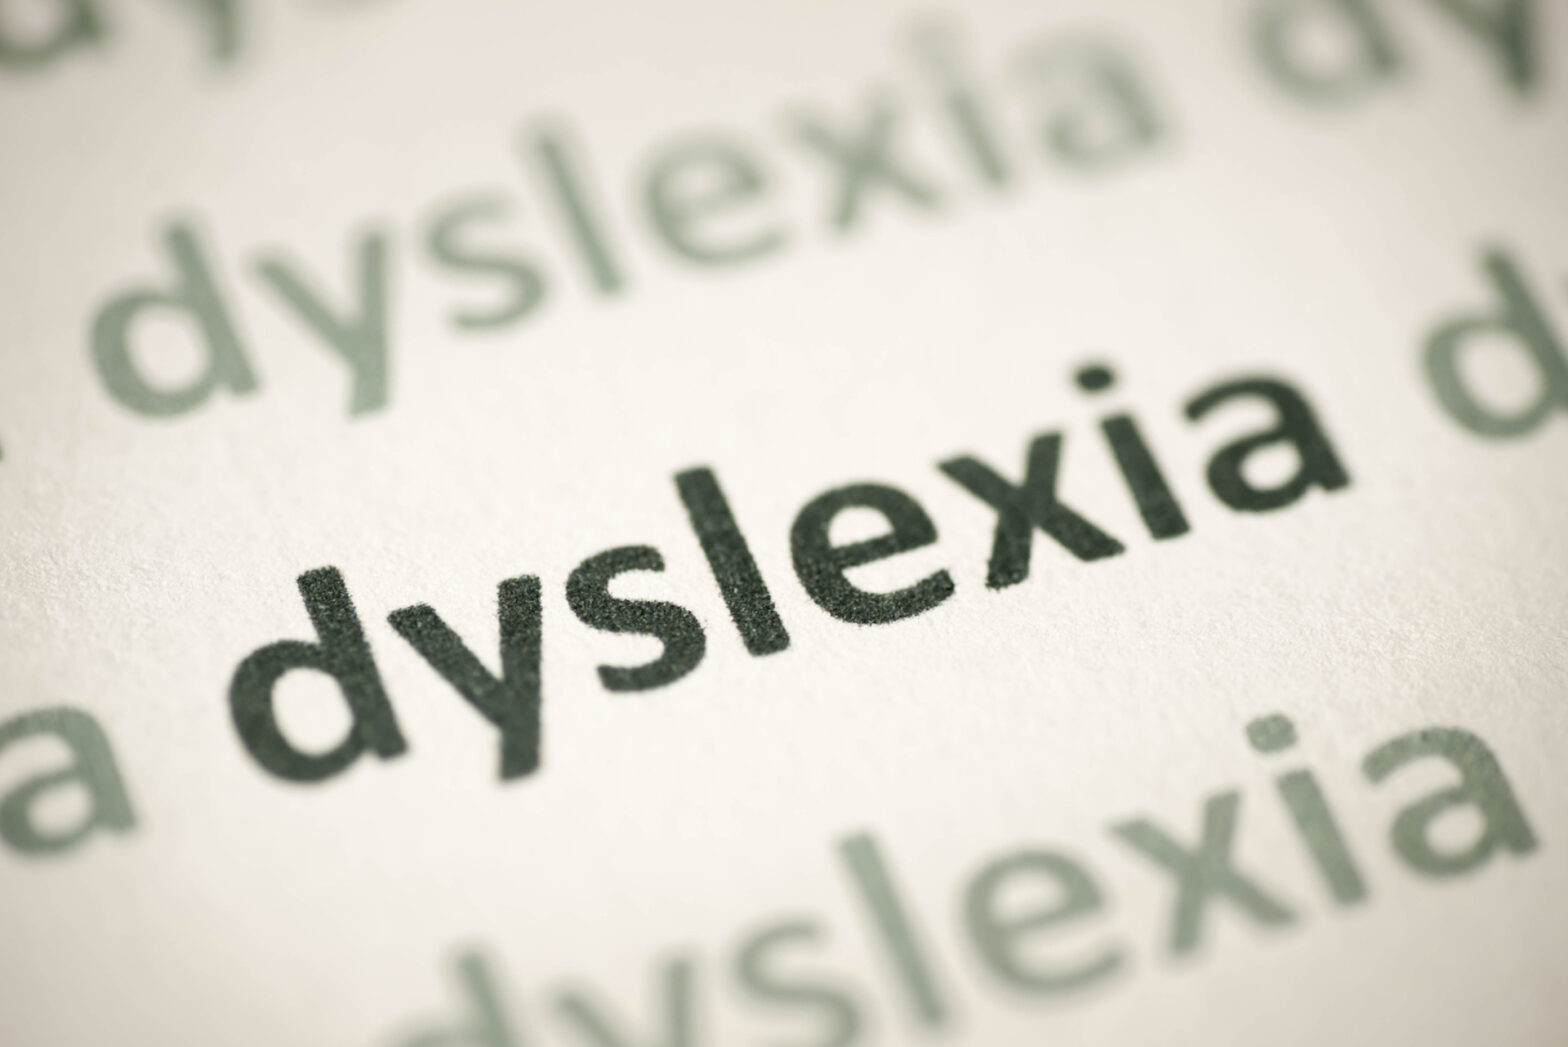 Global Dyslexia Treatments Industry